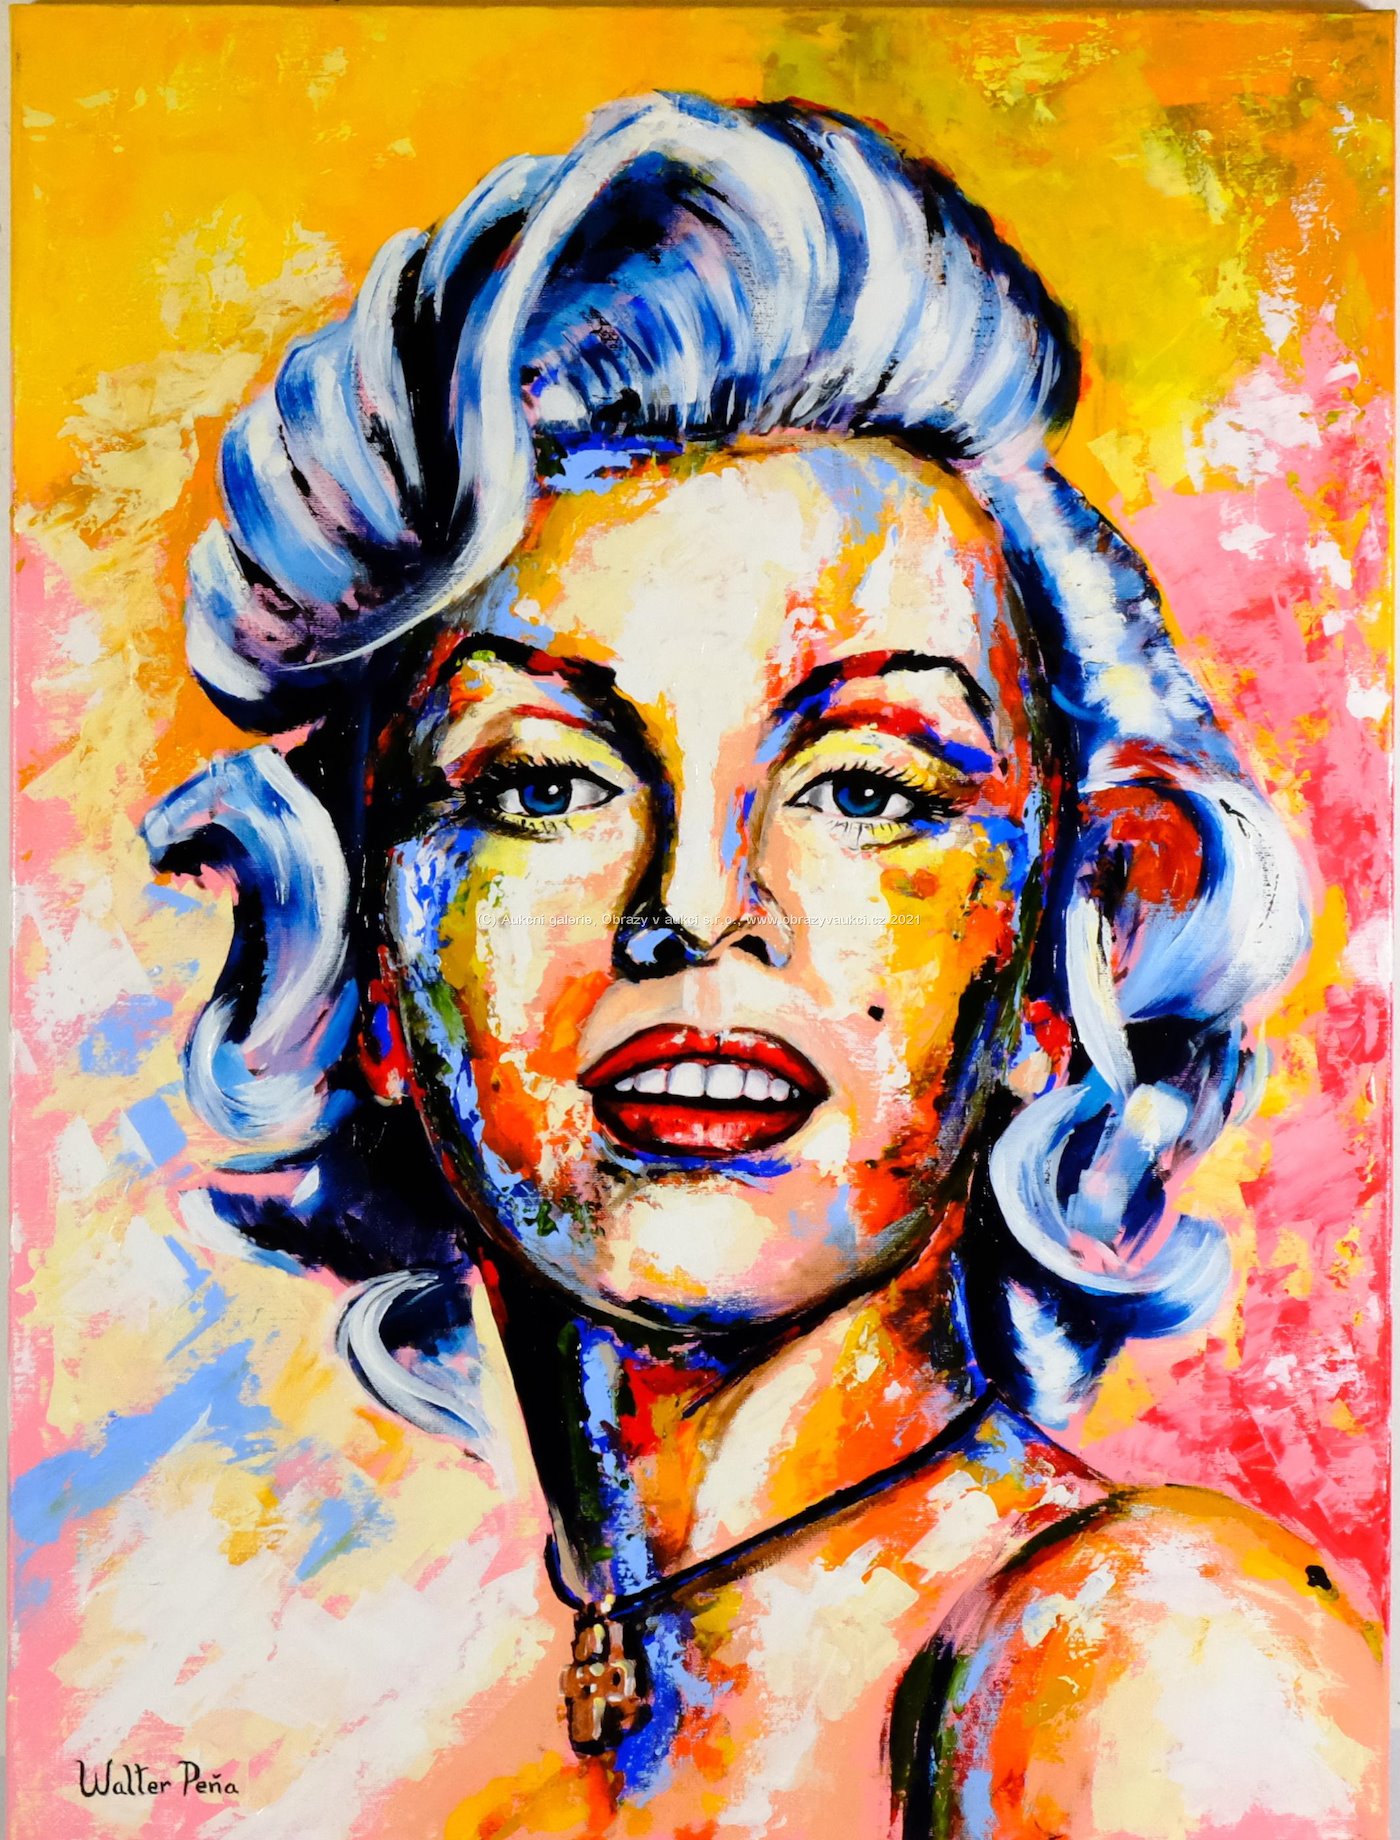 Walter Peňa - My Marilyn Monroe